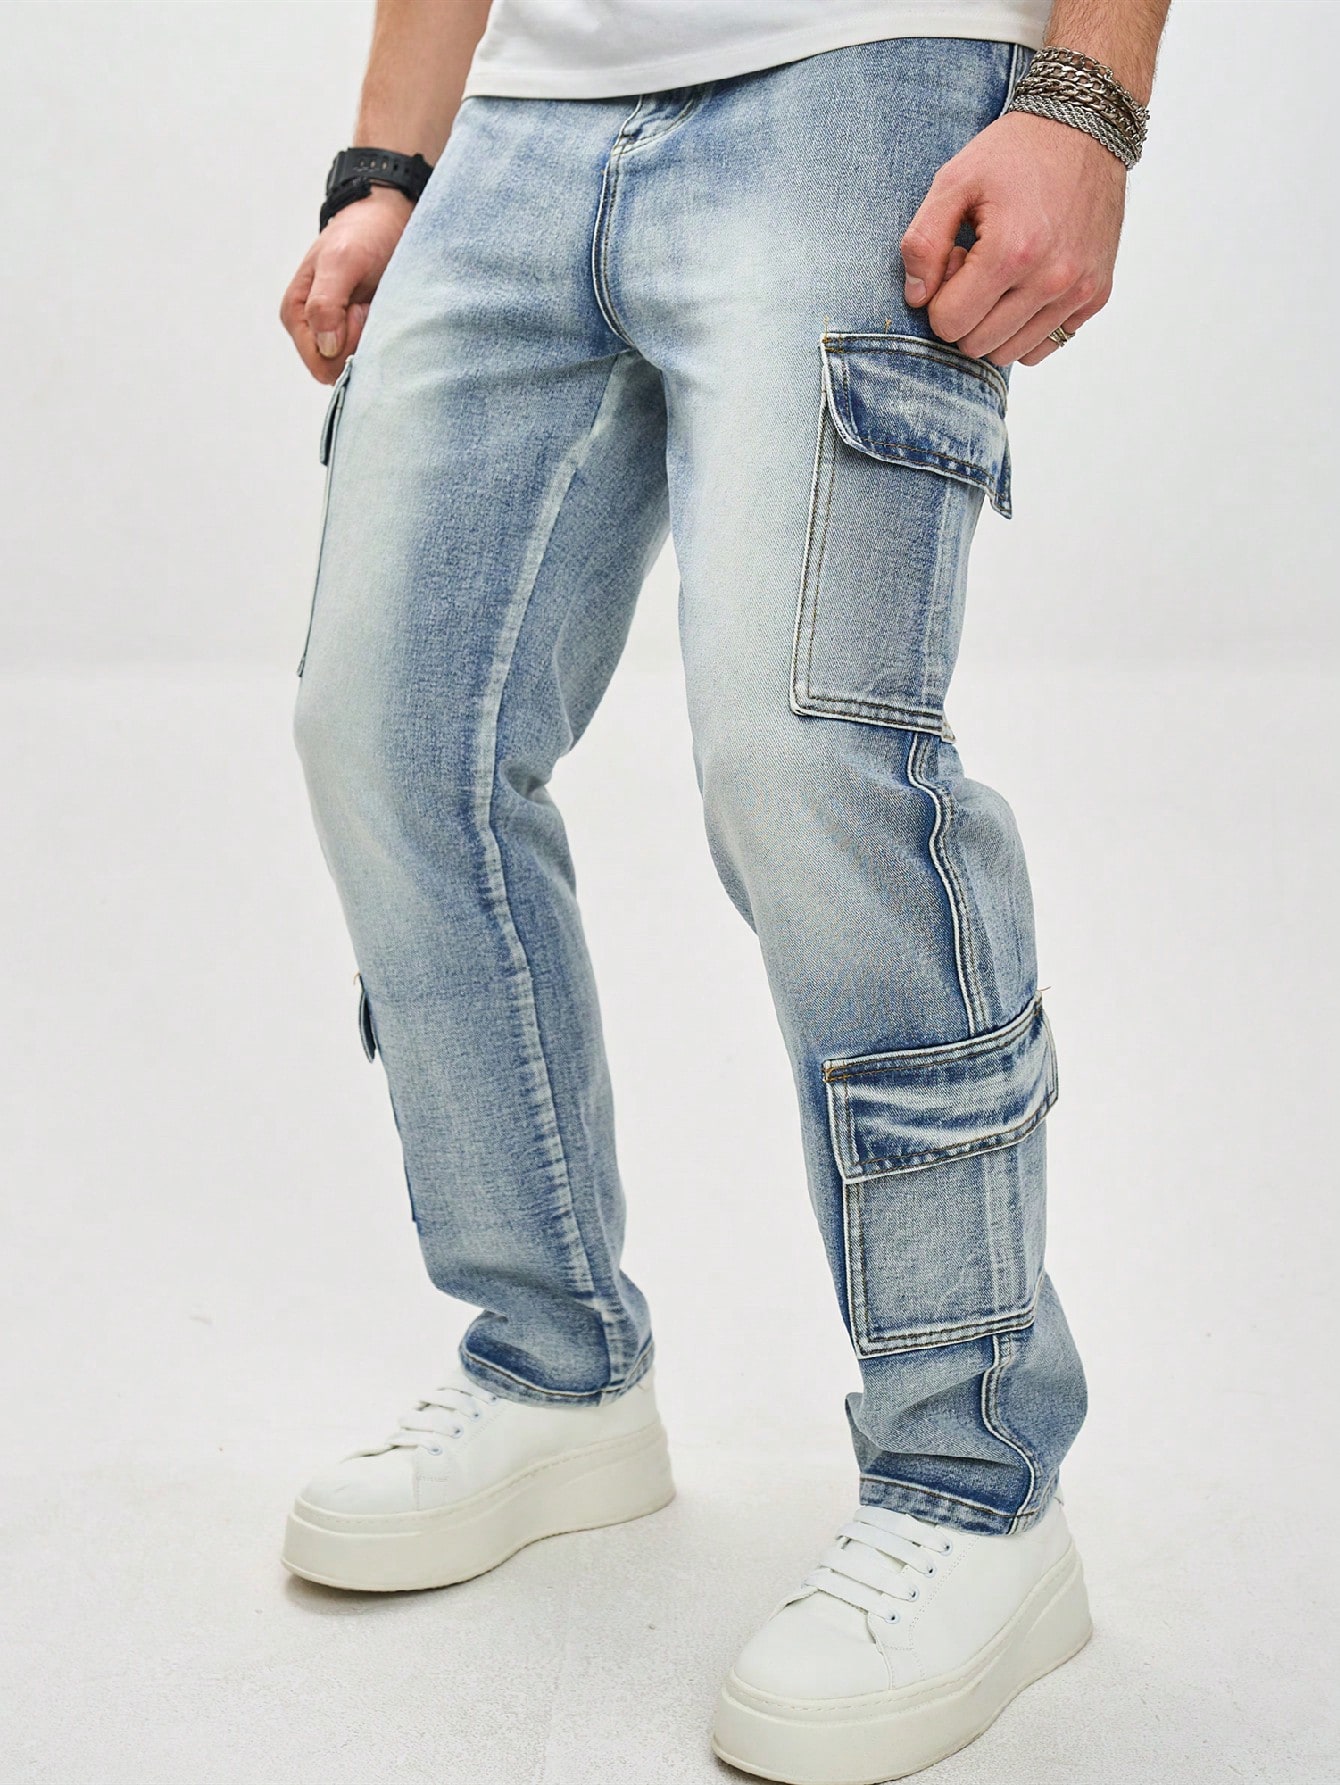 Мужские джинсы карго с стиркой в ​​воде Manfinity EMRG, легкая стирка